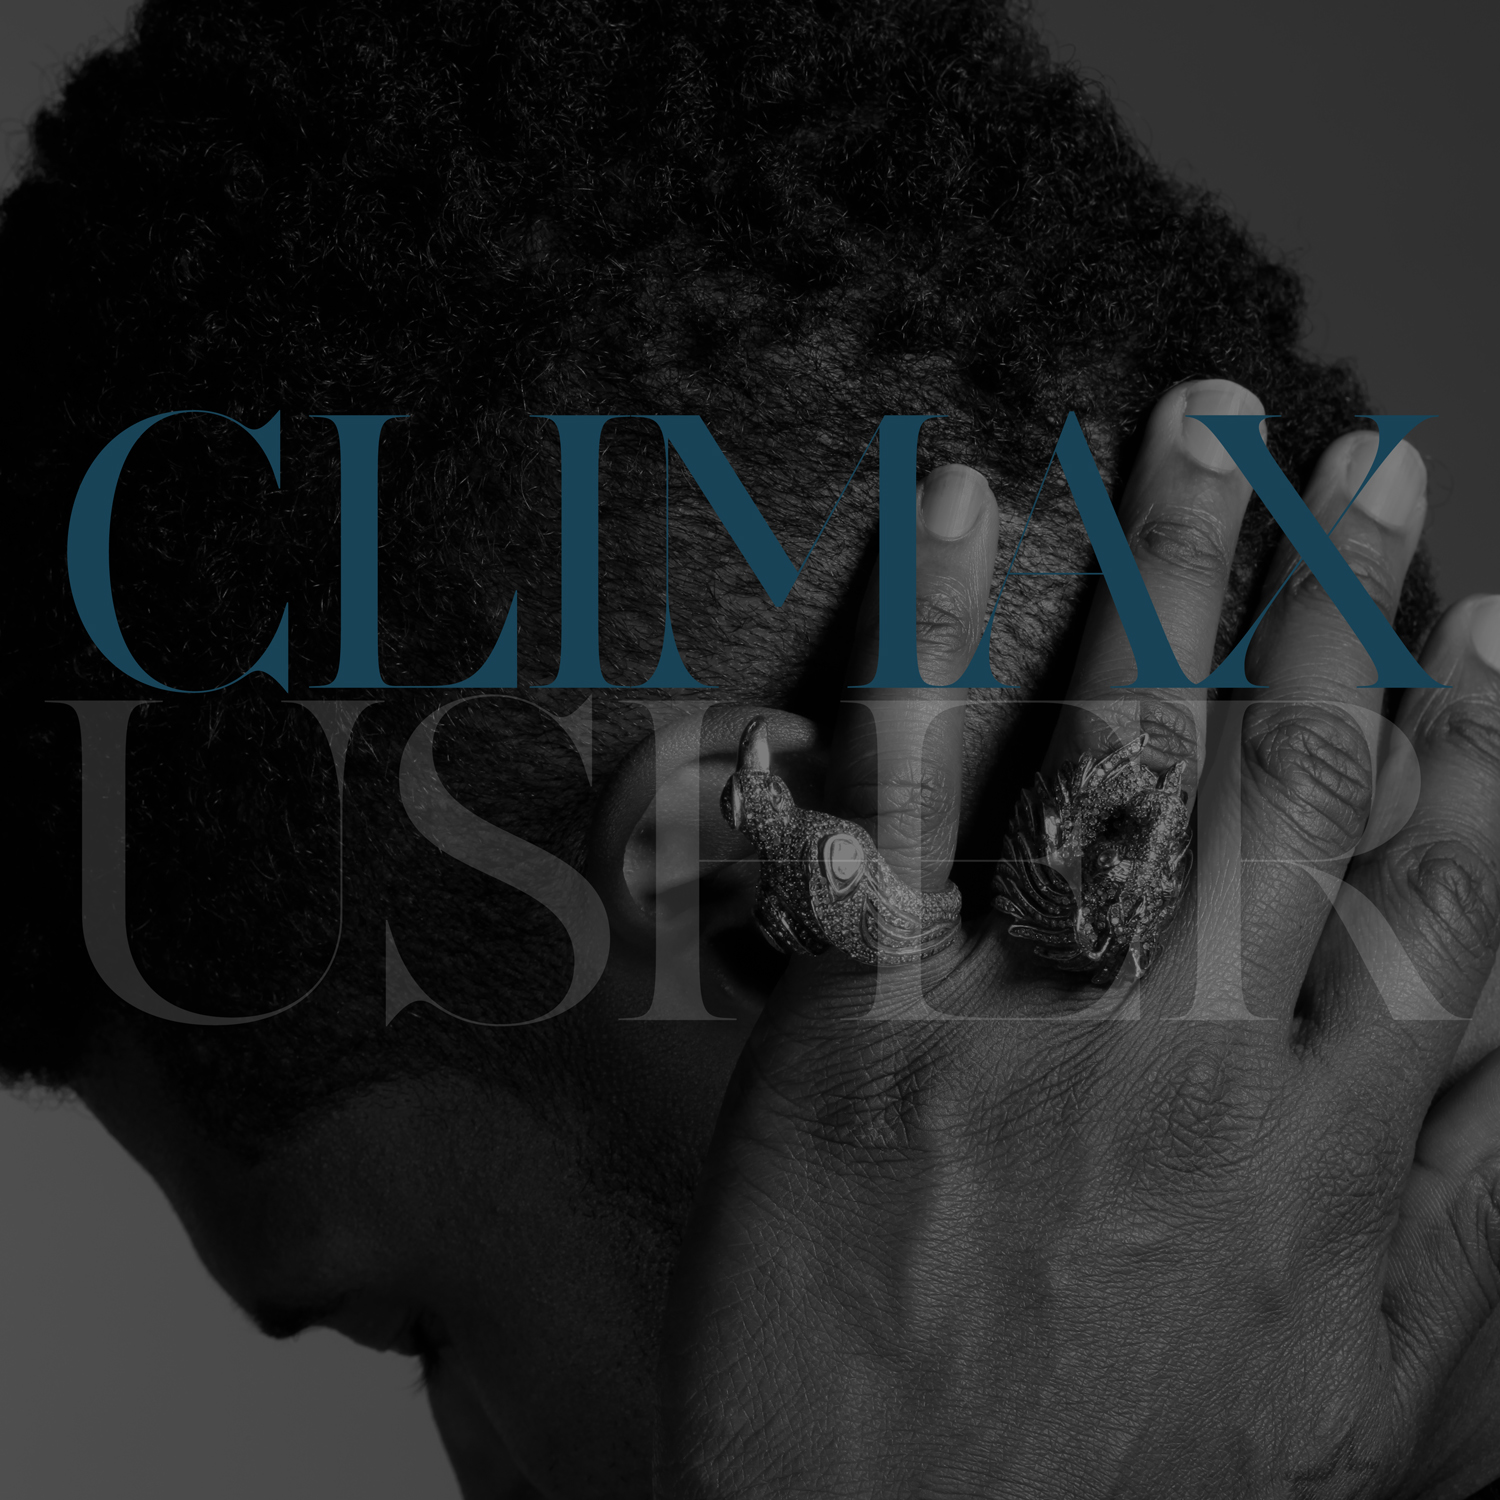 Usher_Climaxart